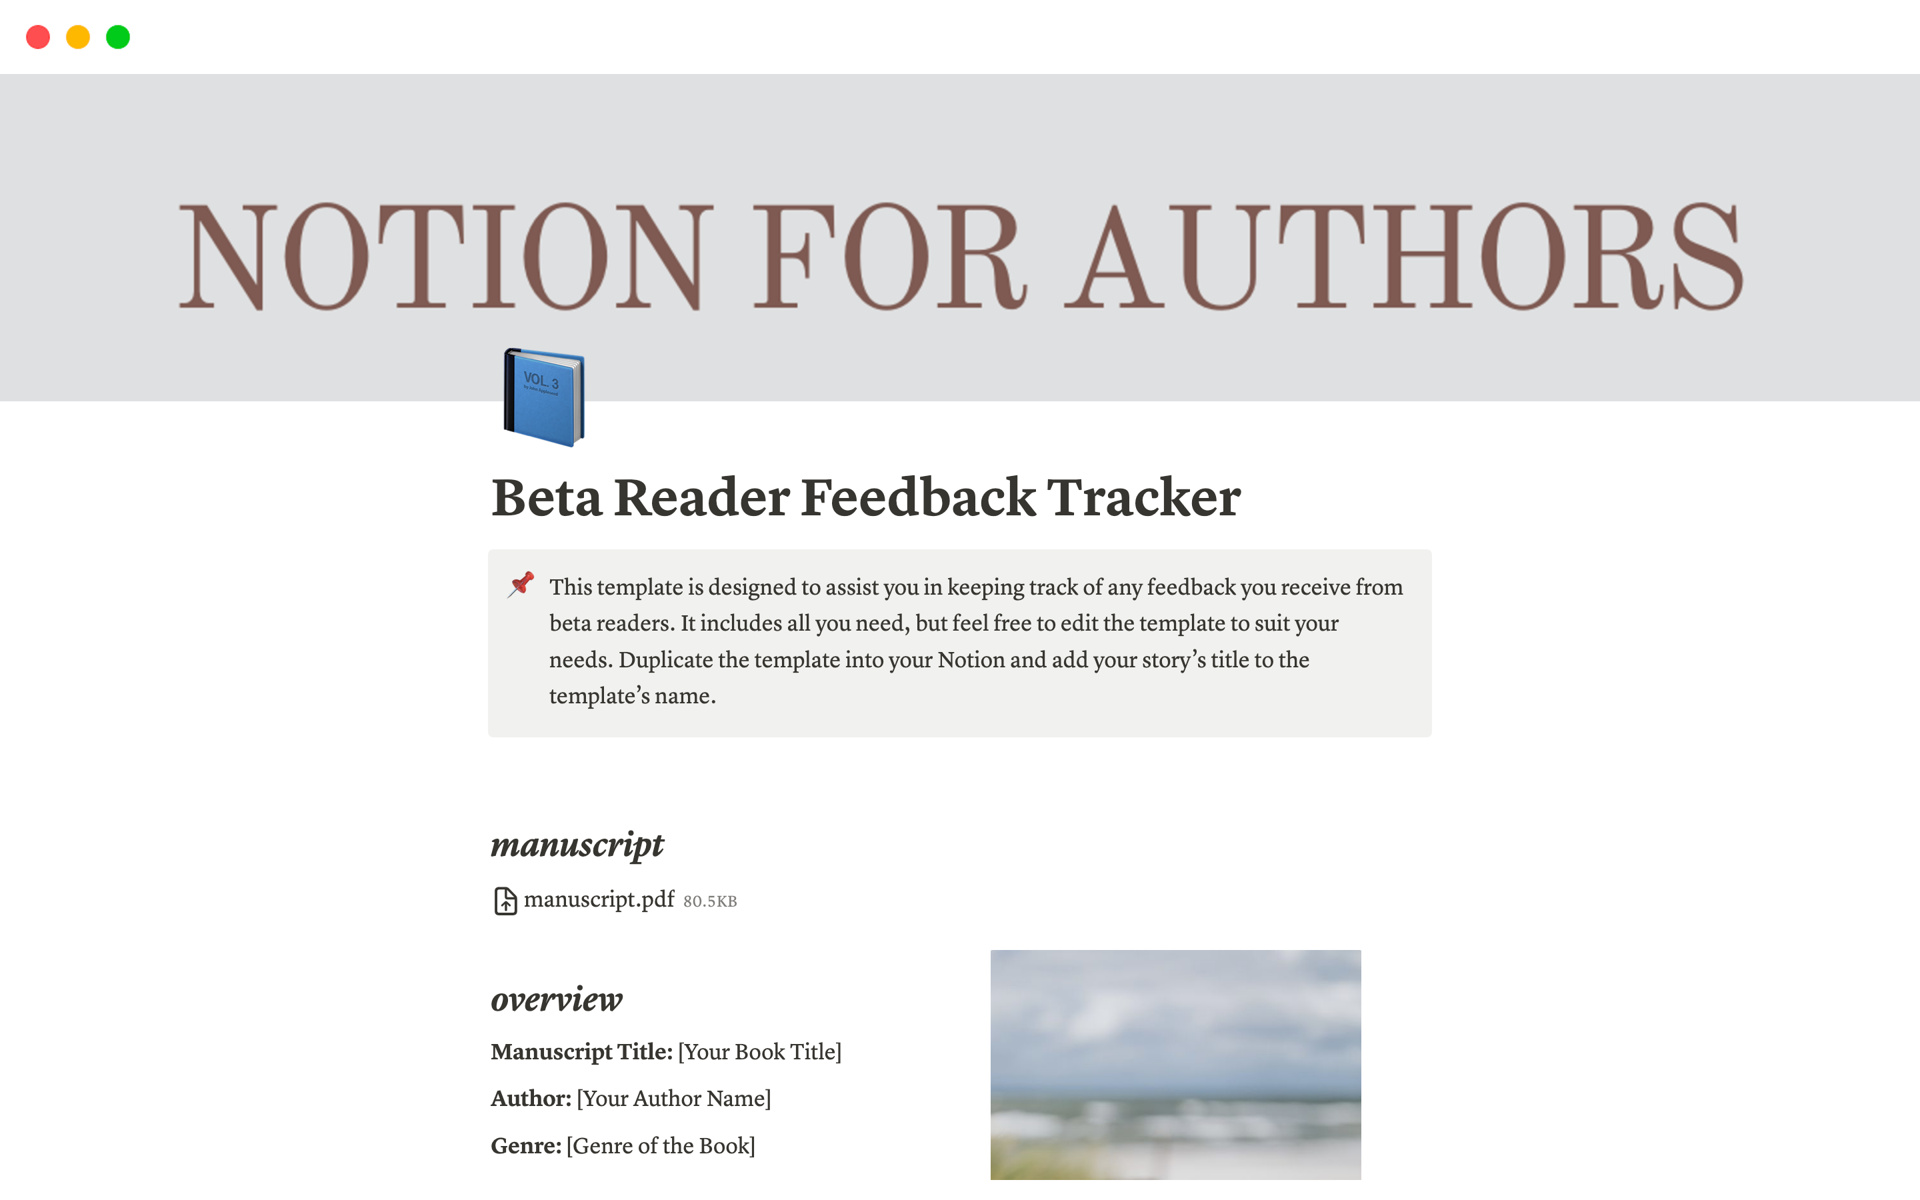 Uma prévia do modelo para Beta Reader Feedback Tracker